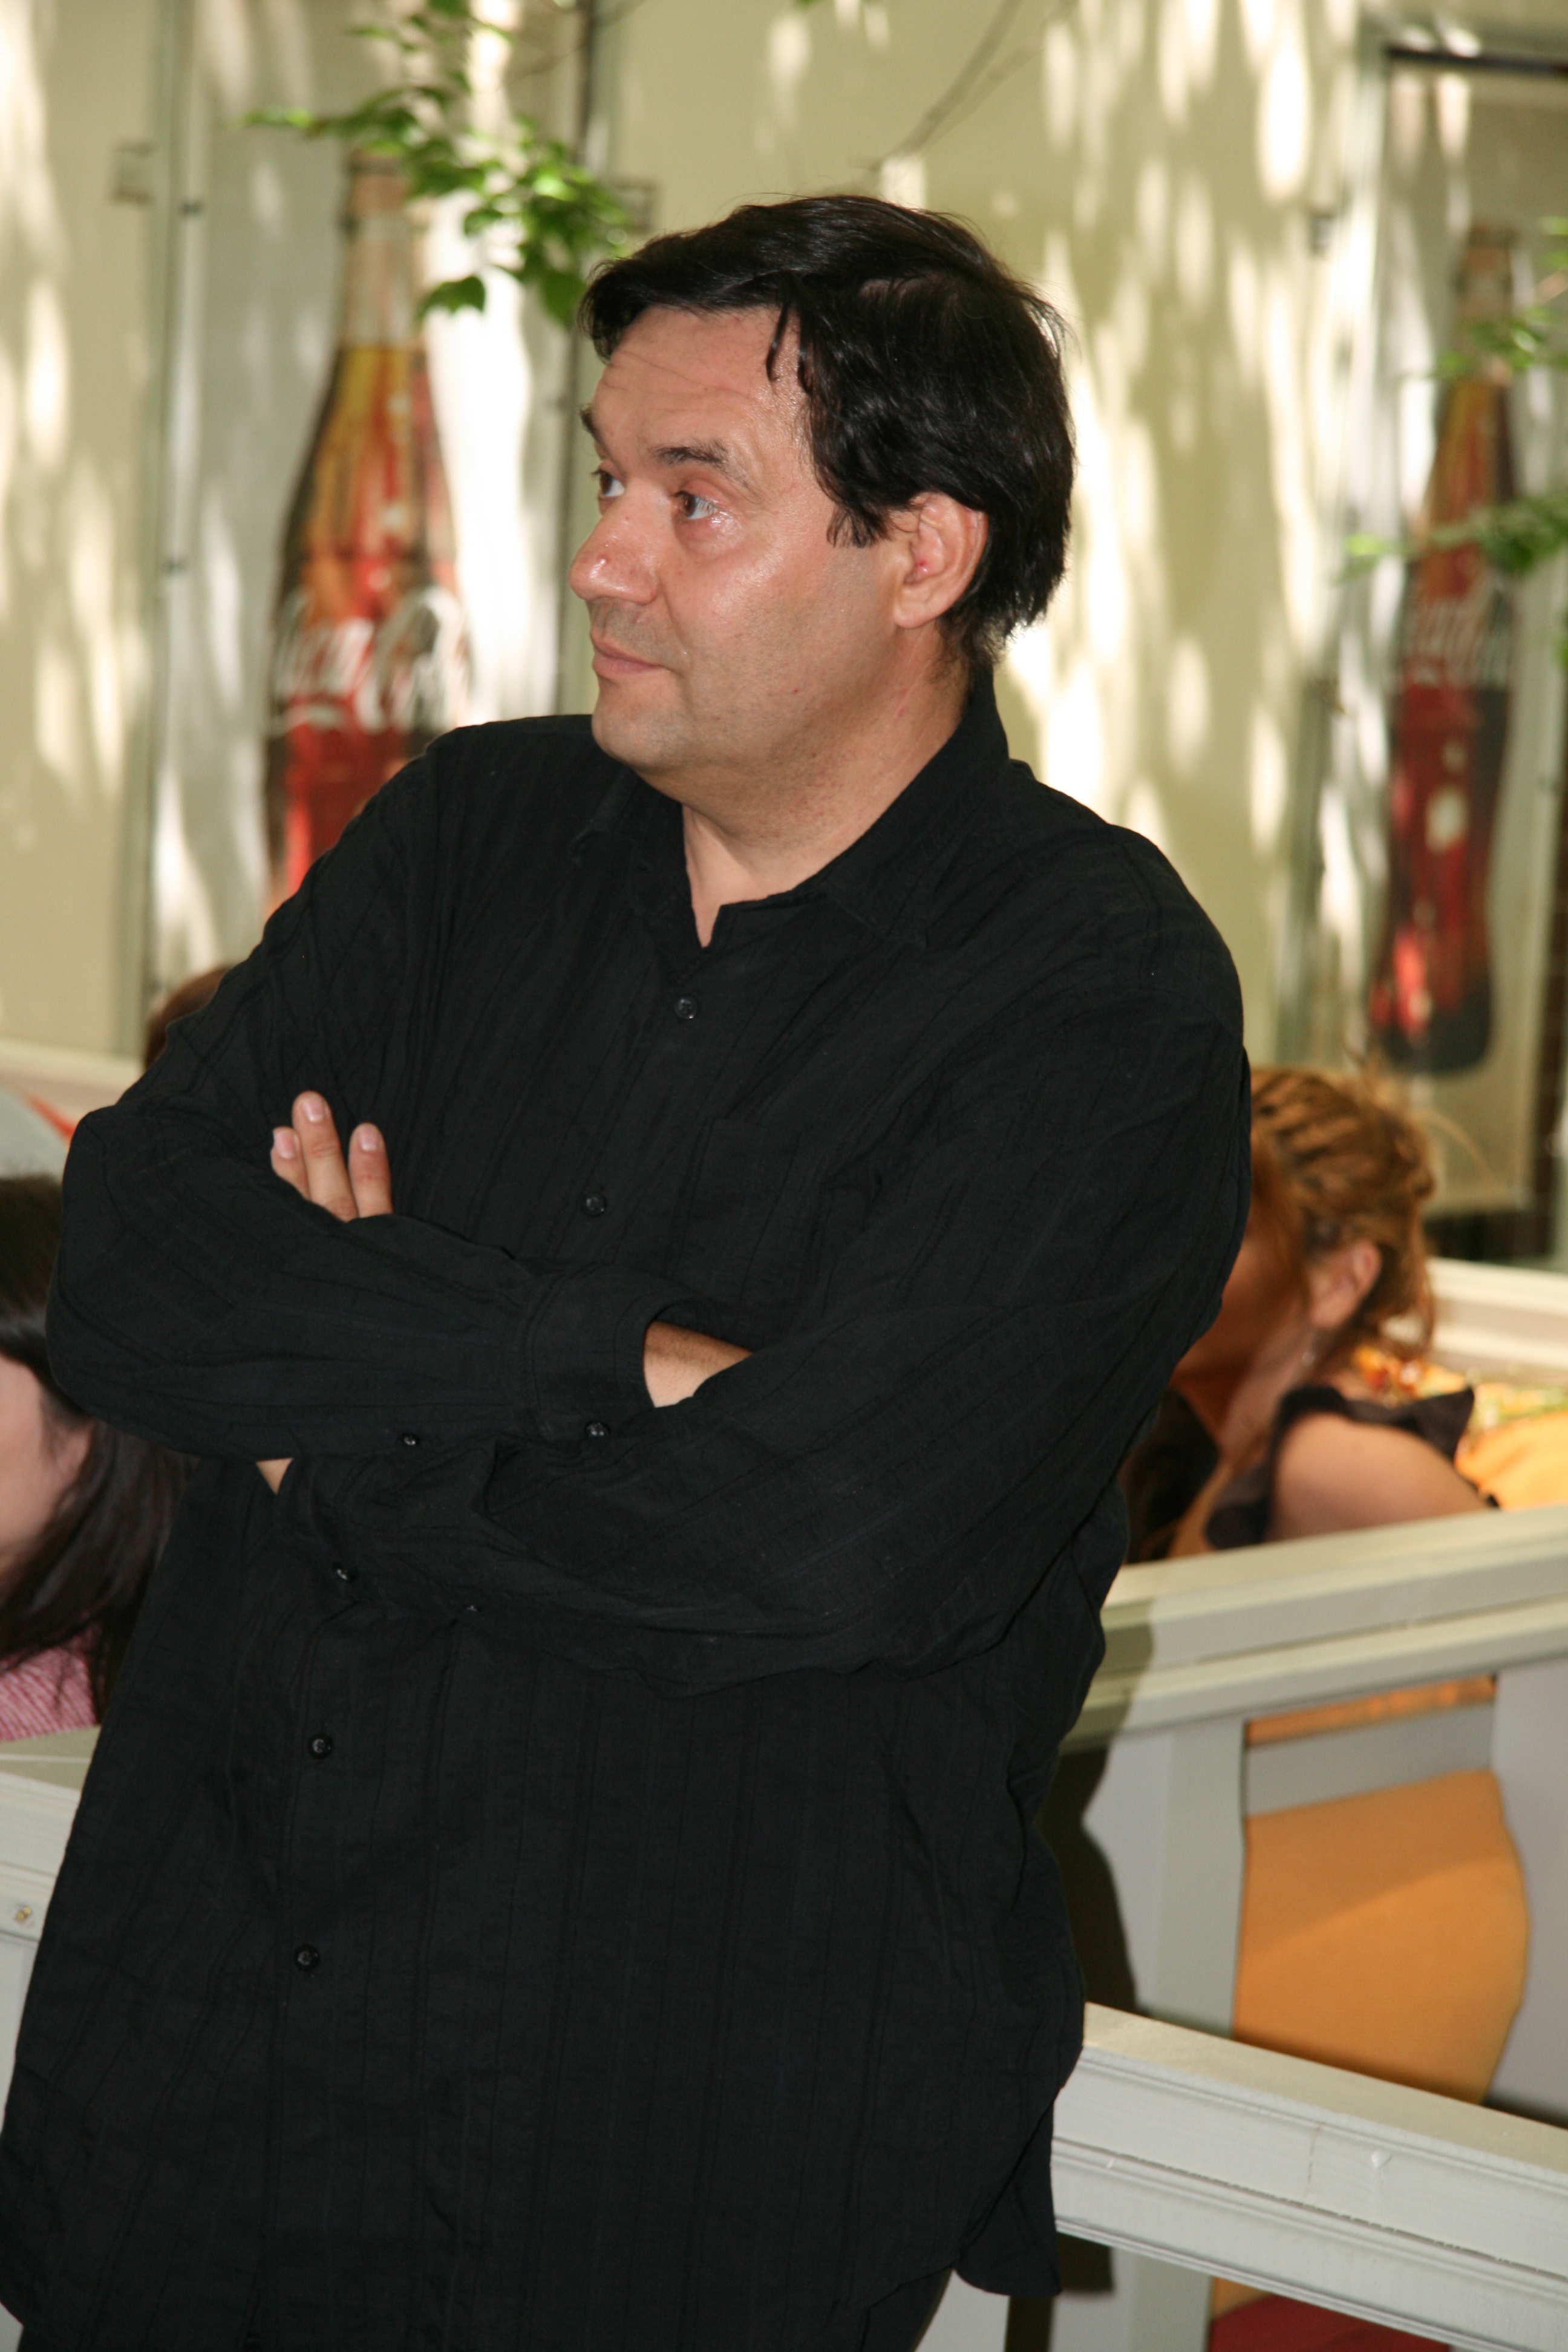 Dan Boerescu